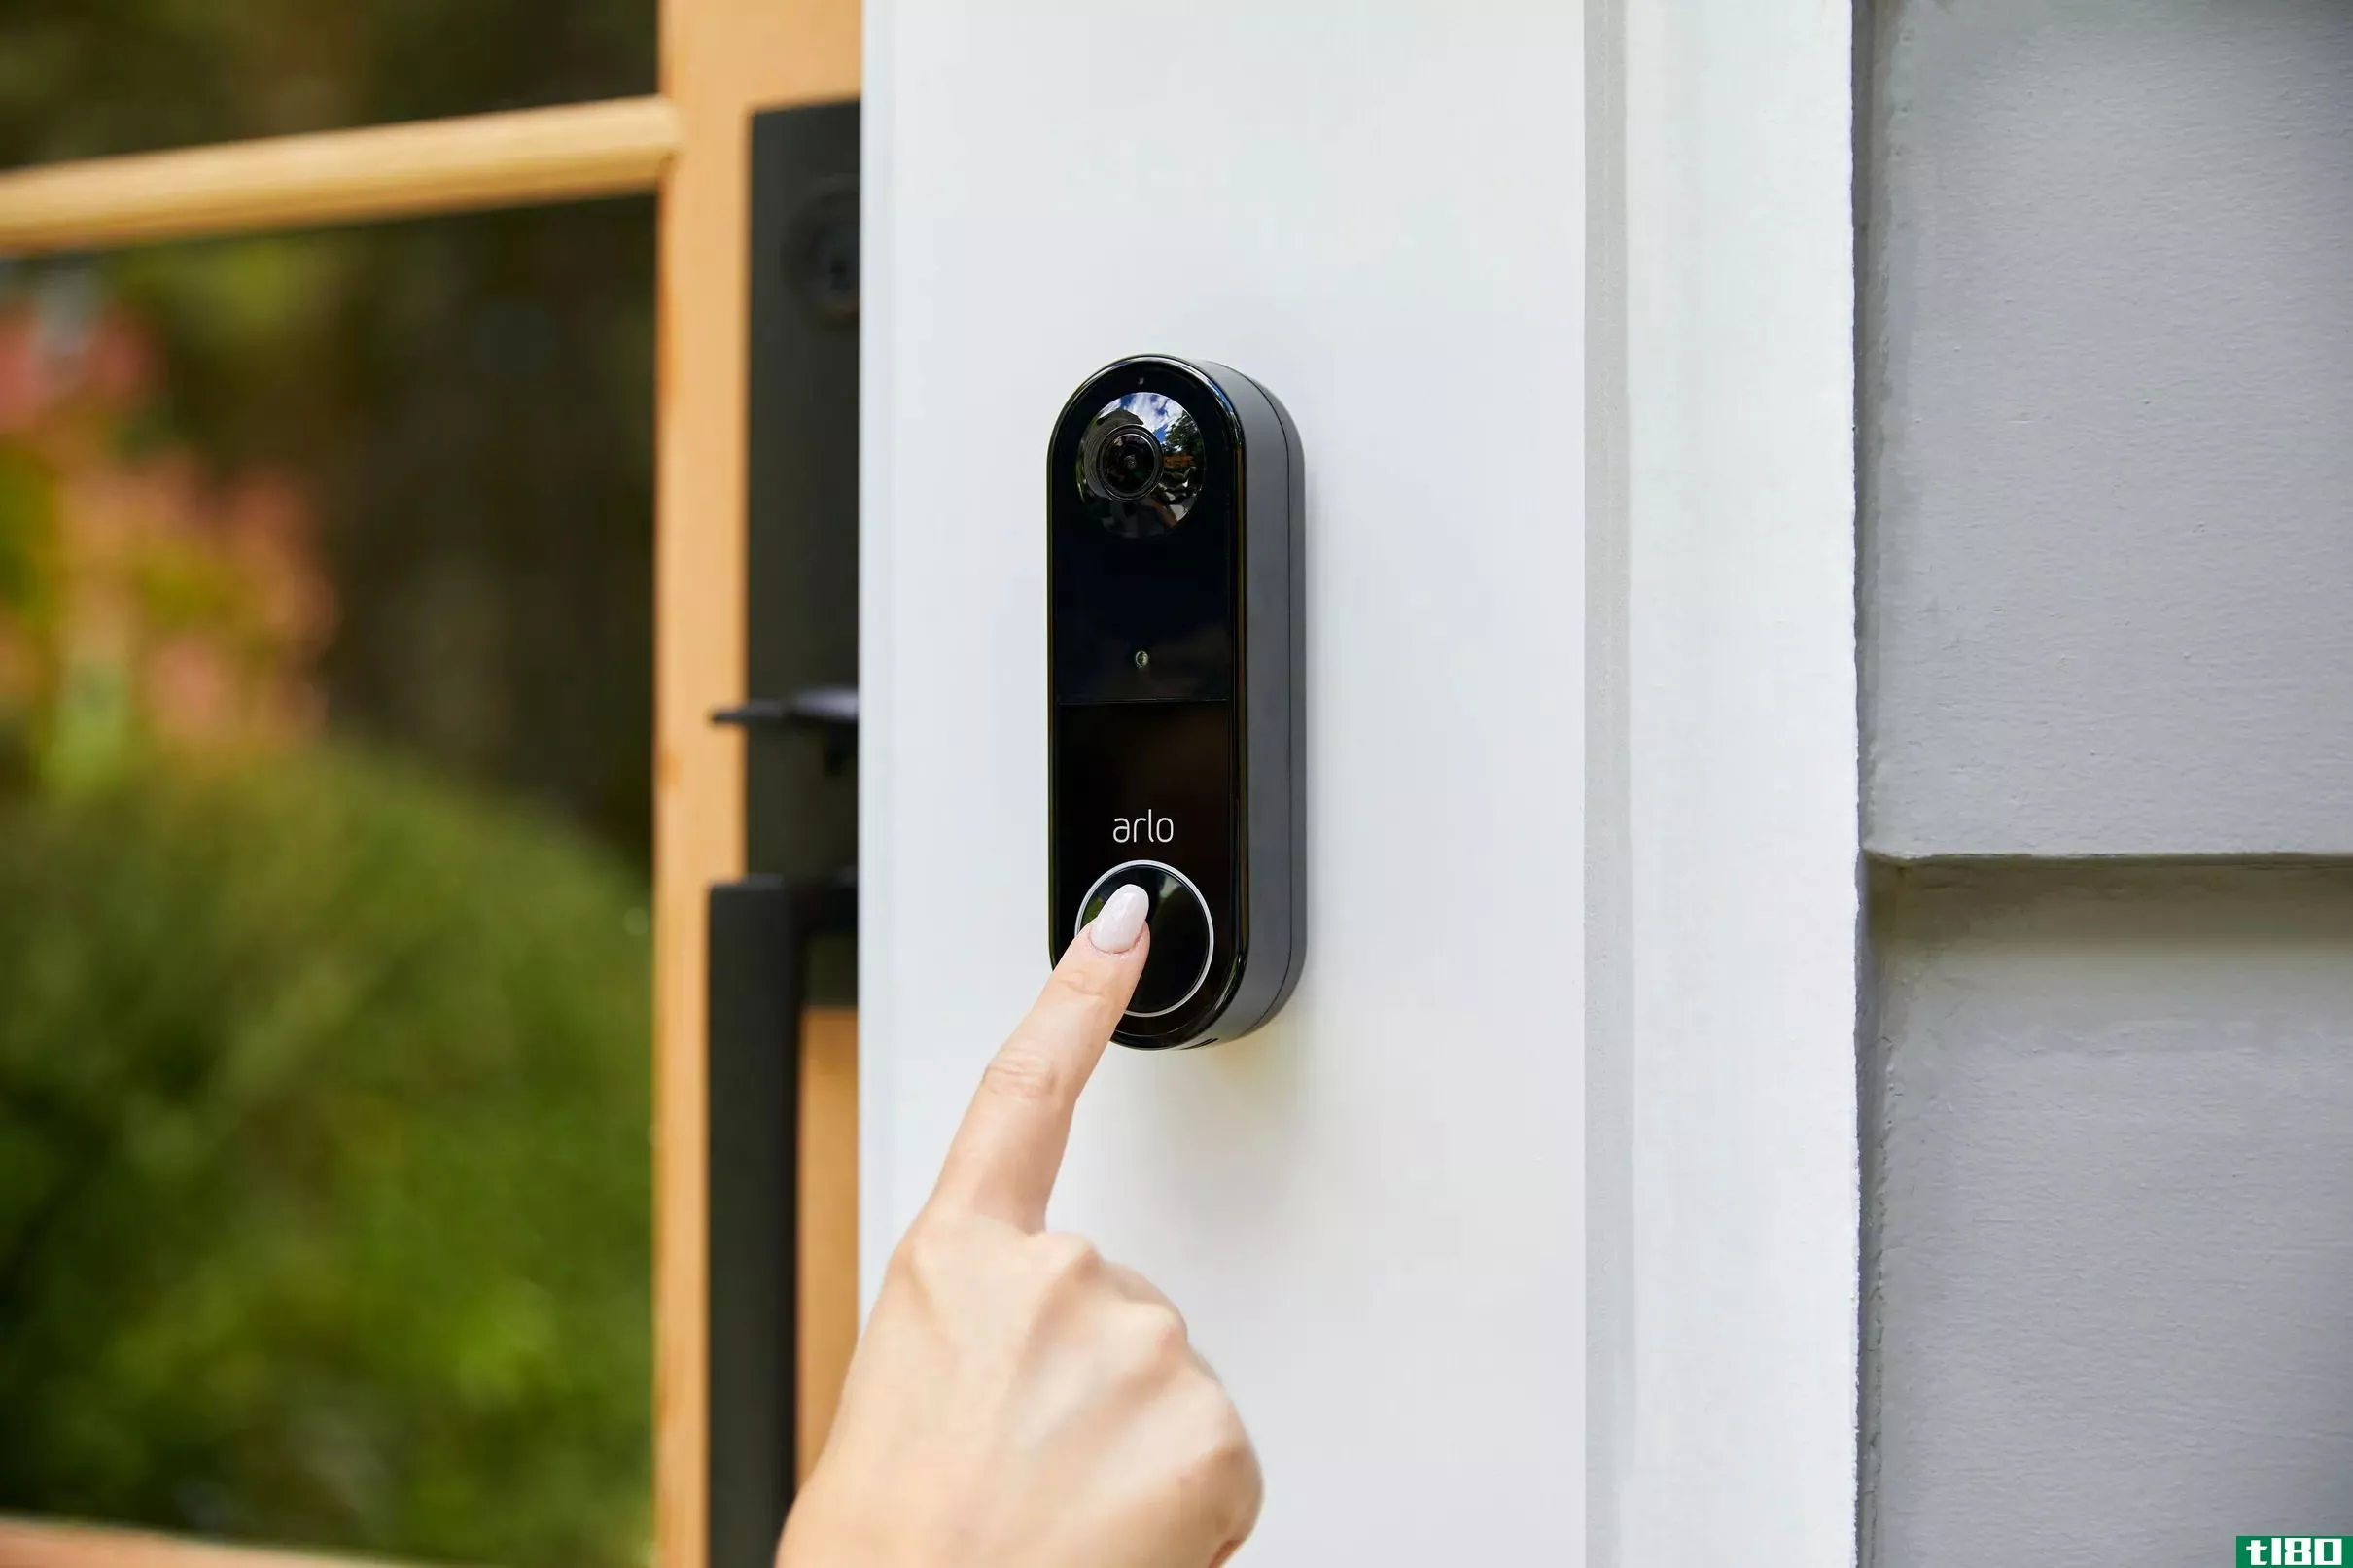 爱洛也有一个可触摸的门铃-我们不能更新现有的门铃吗？